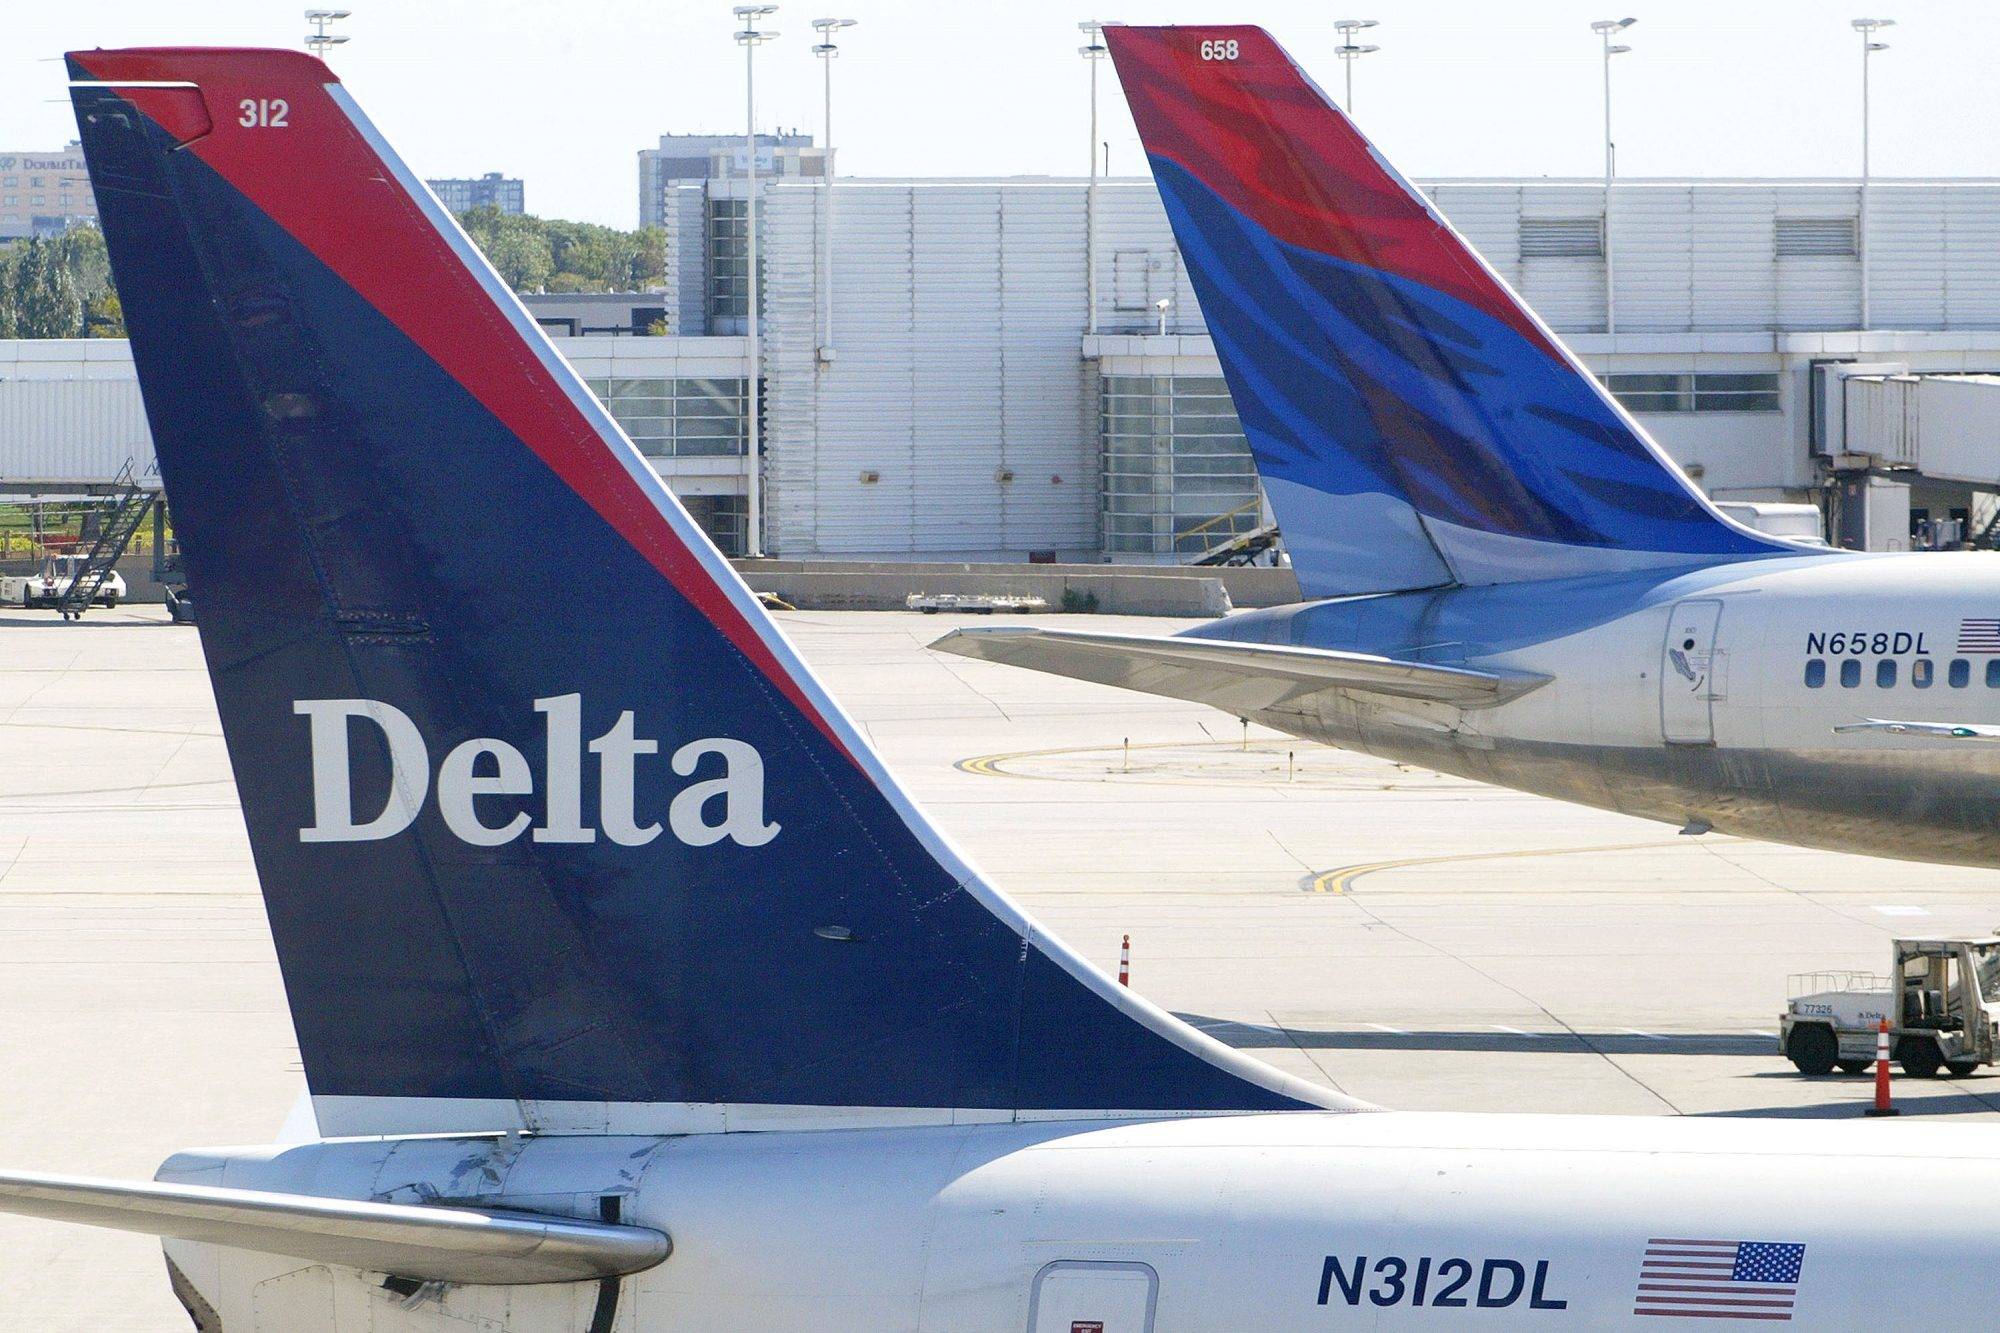 Лучшая покупка авиакомпании: delta, united или american? - инвестирование 2022